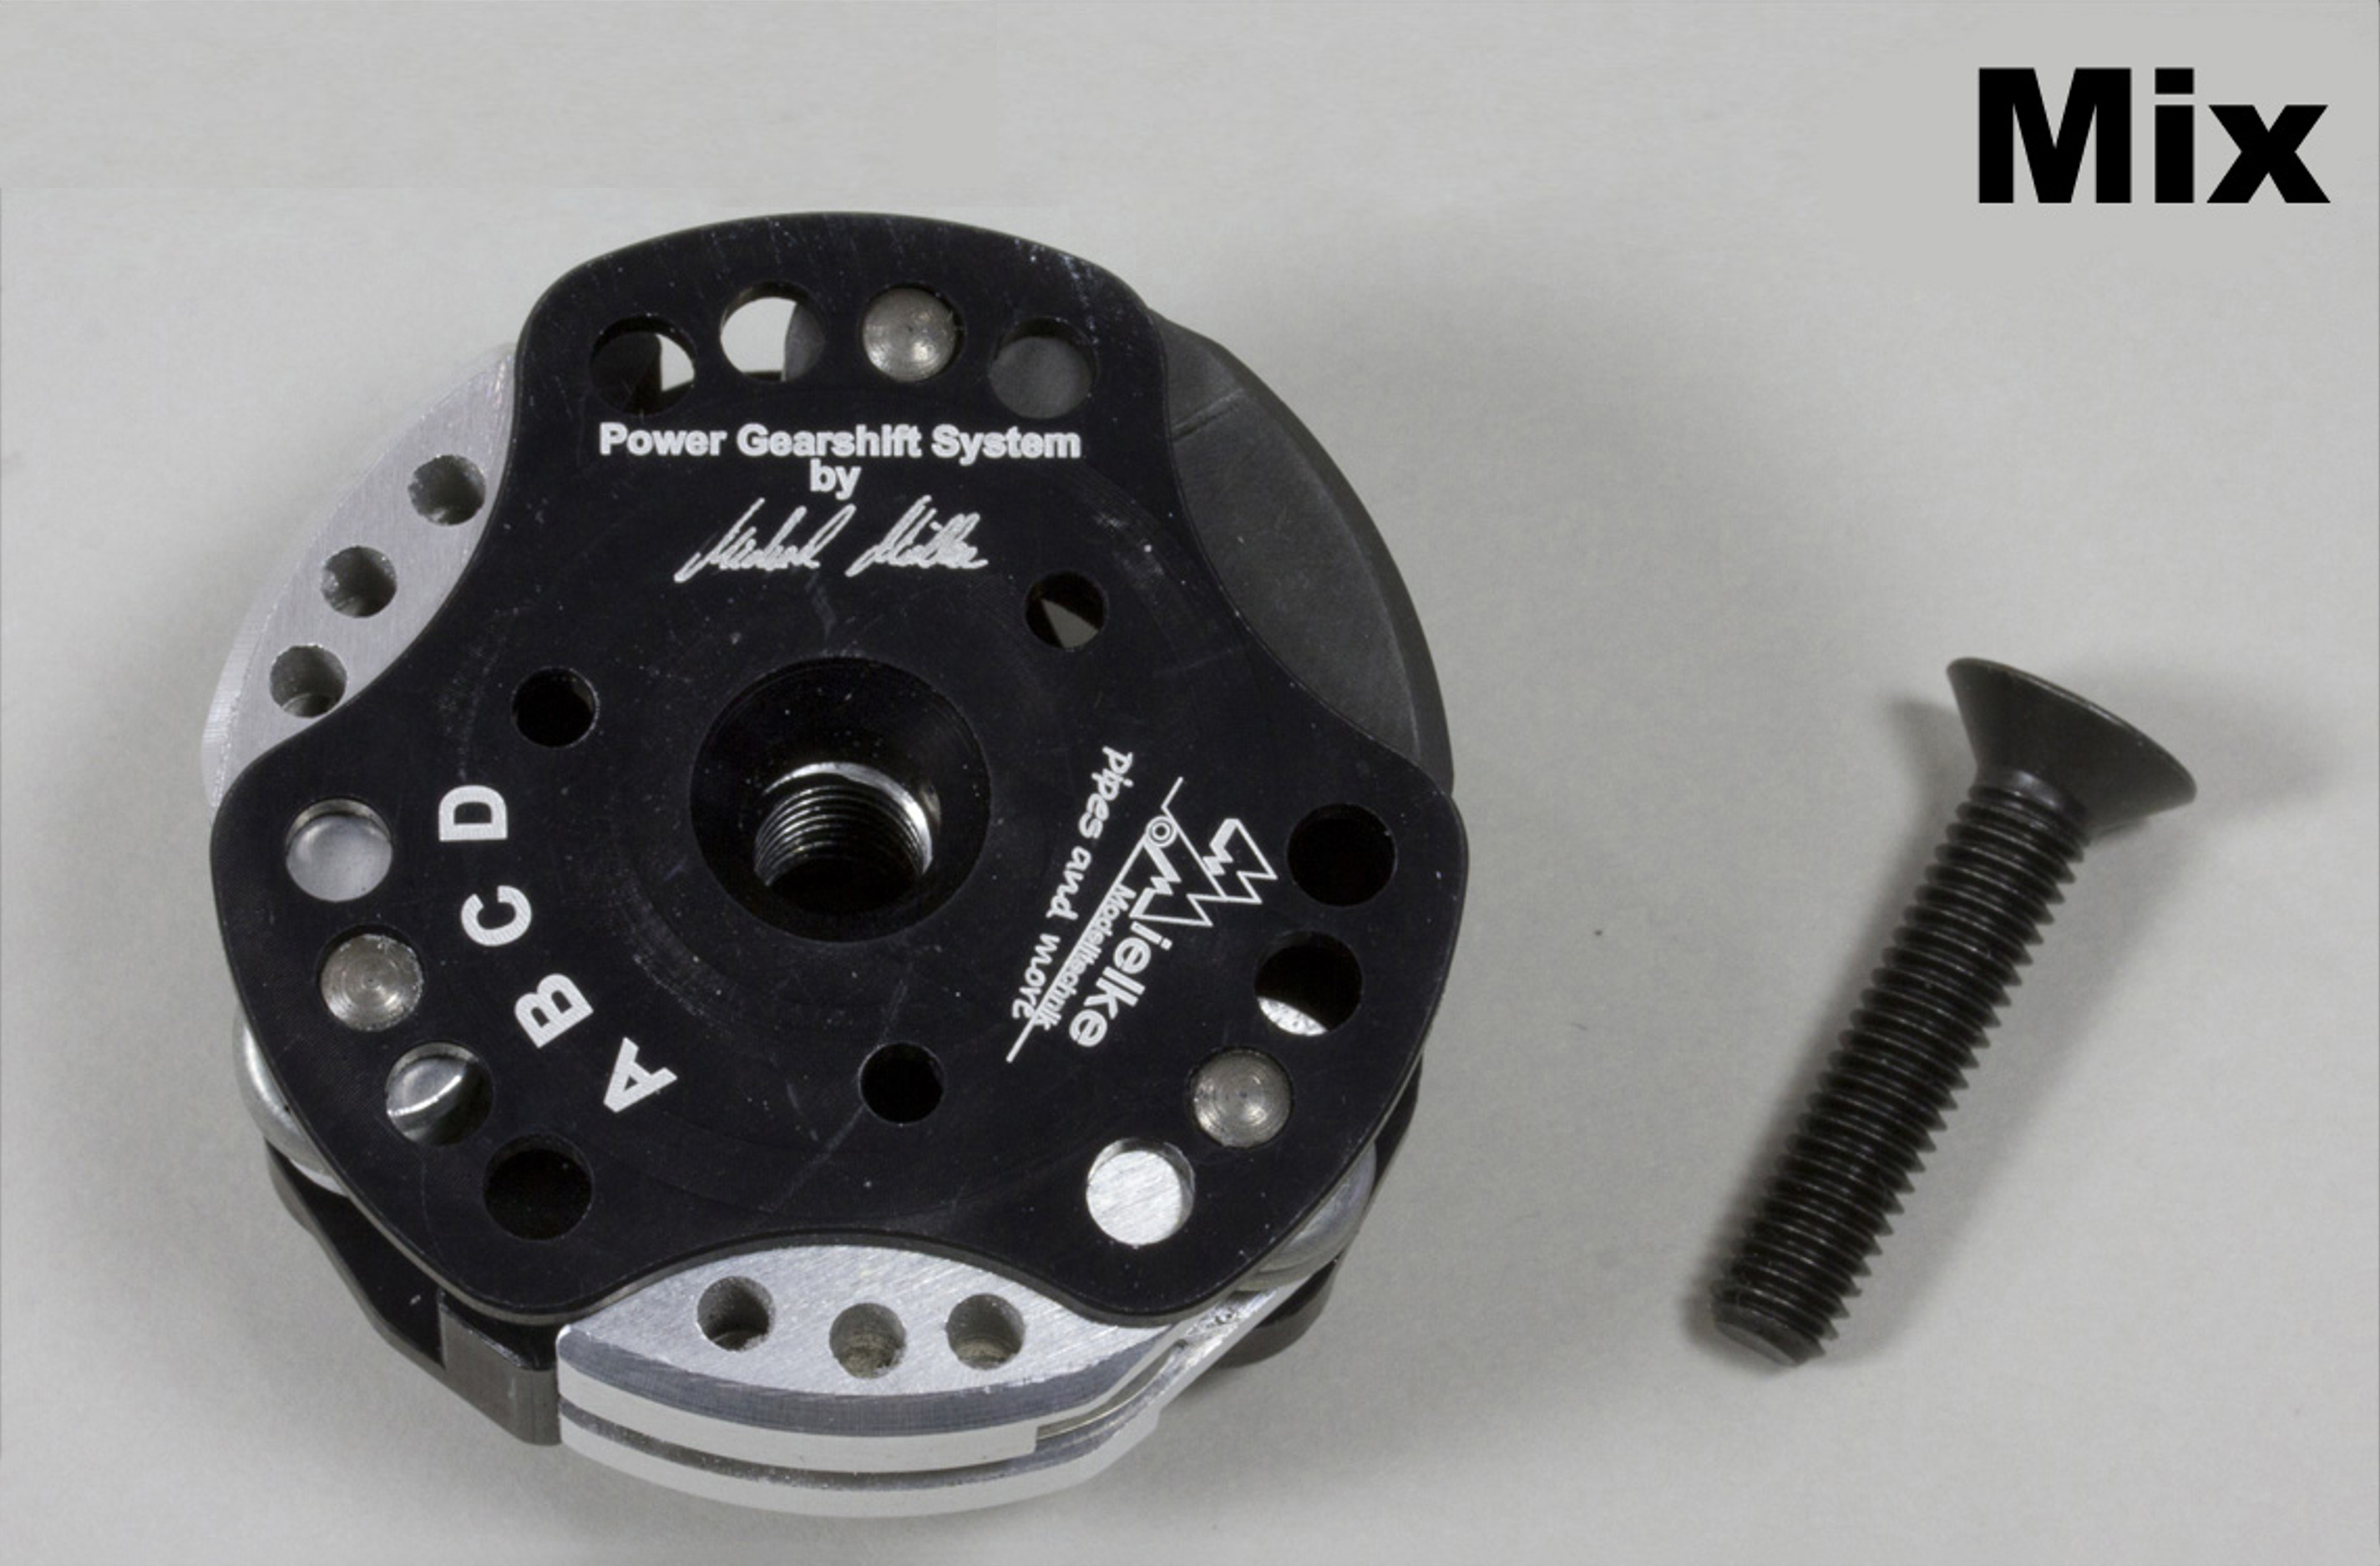 Mielke 5541 Power Gearshift Kupplung für FG, (außer Formel 1+Evo2020), Harm, RS5, Mix, 2,4mm Federn, langer Kupplungsmitnehmer